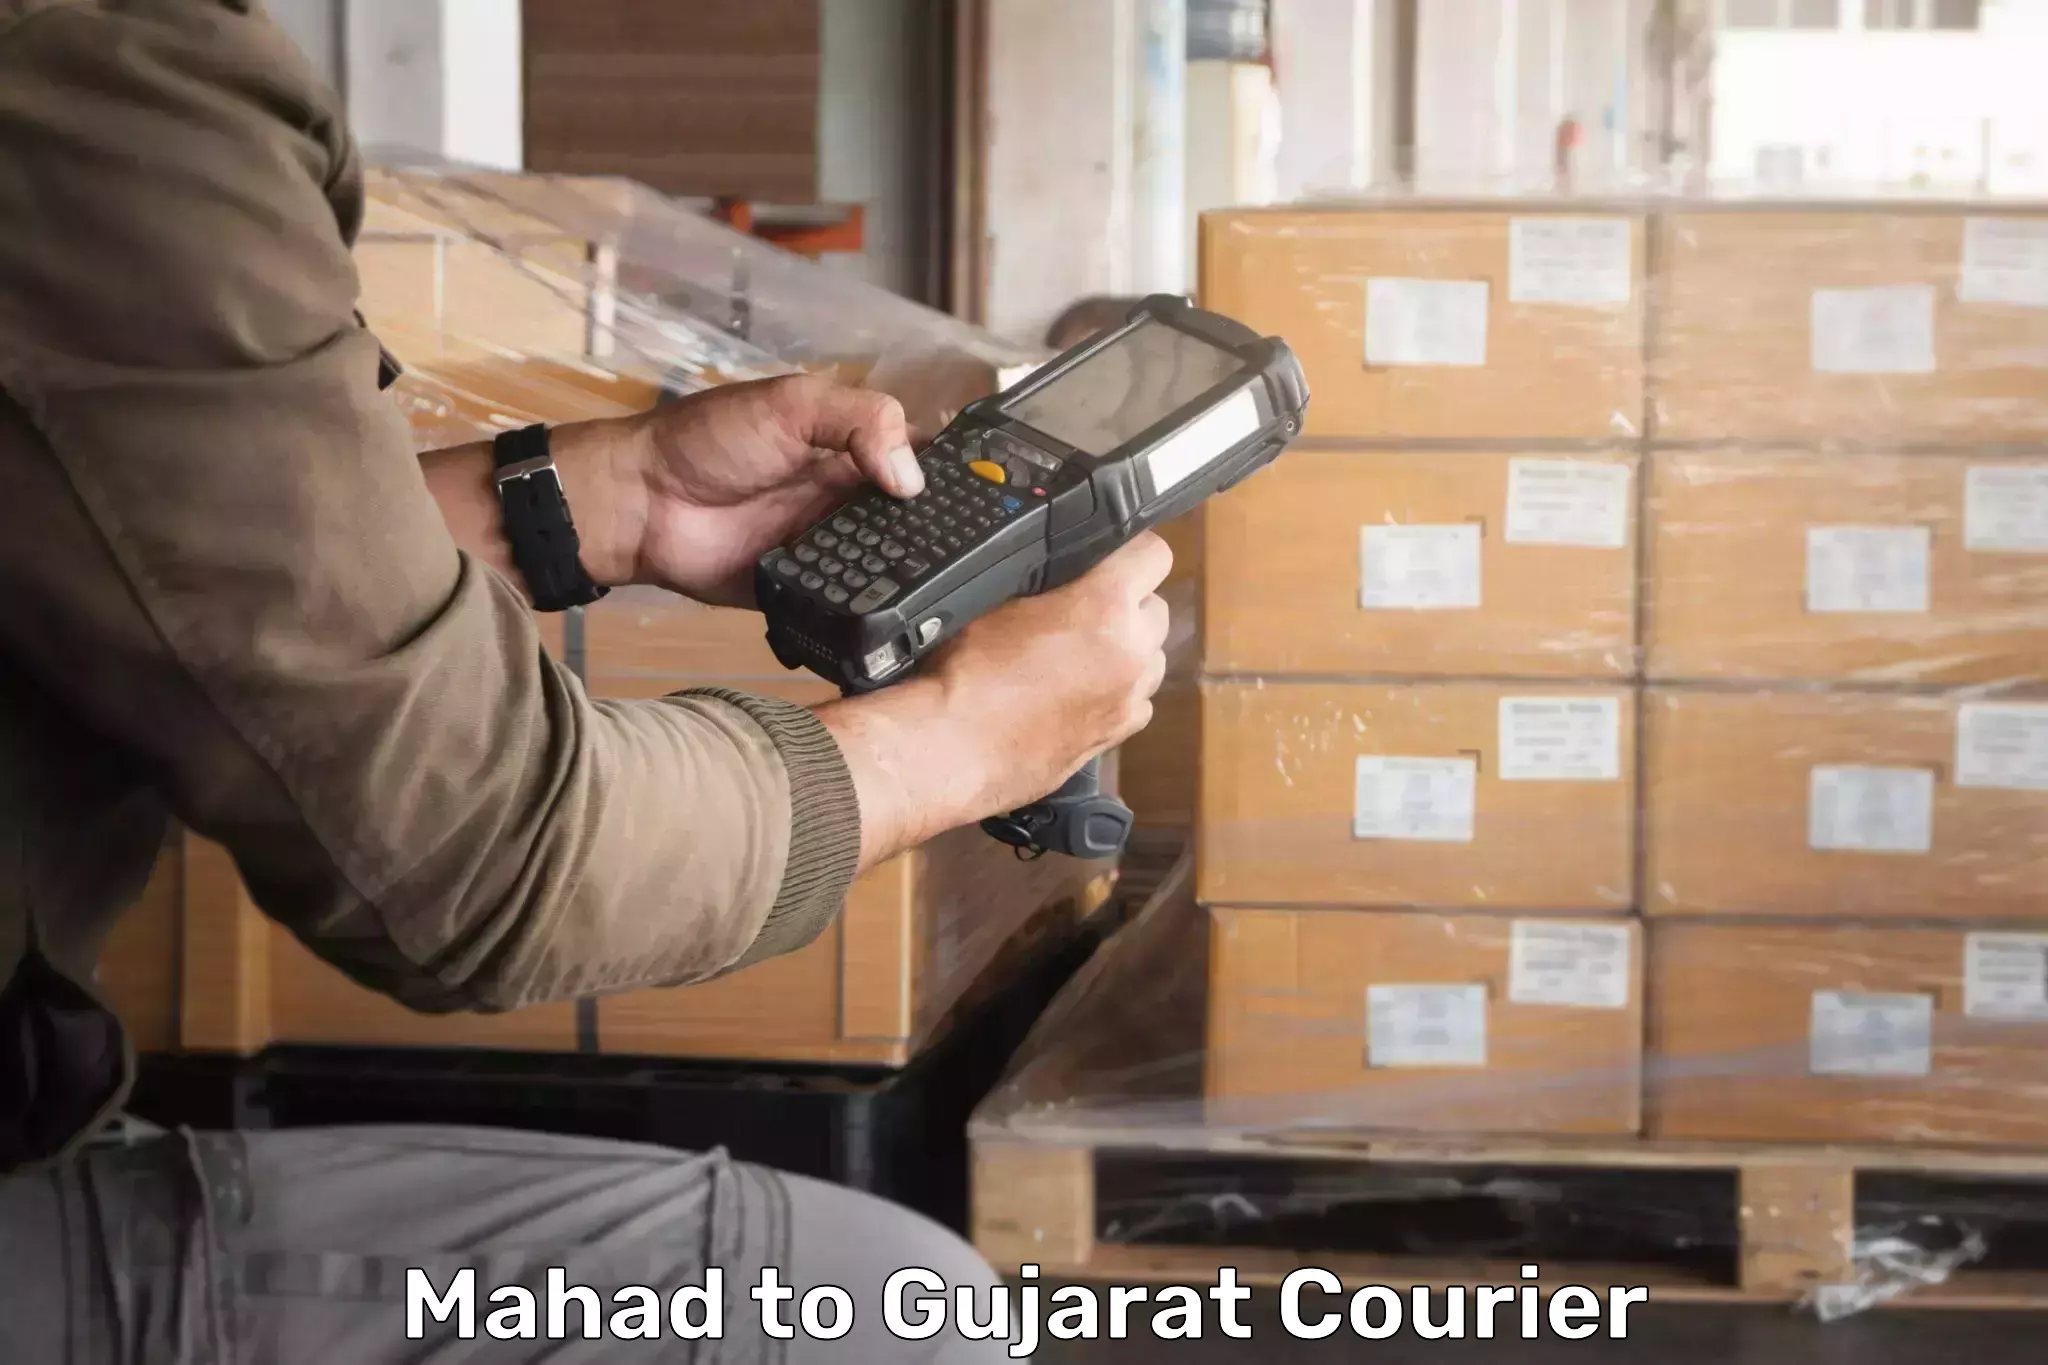 Weekend courier service Mahad to Kadana